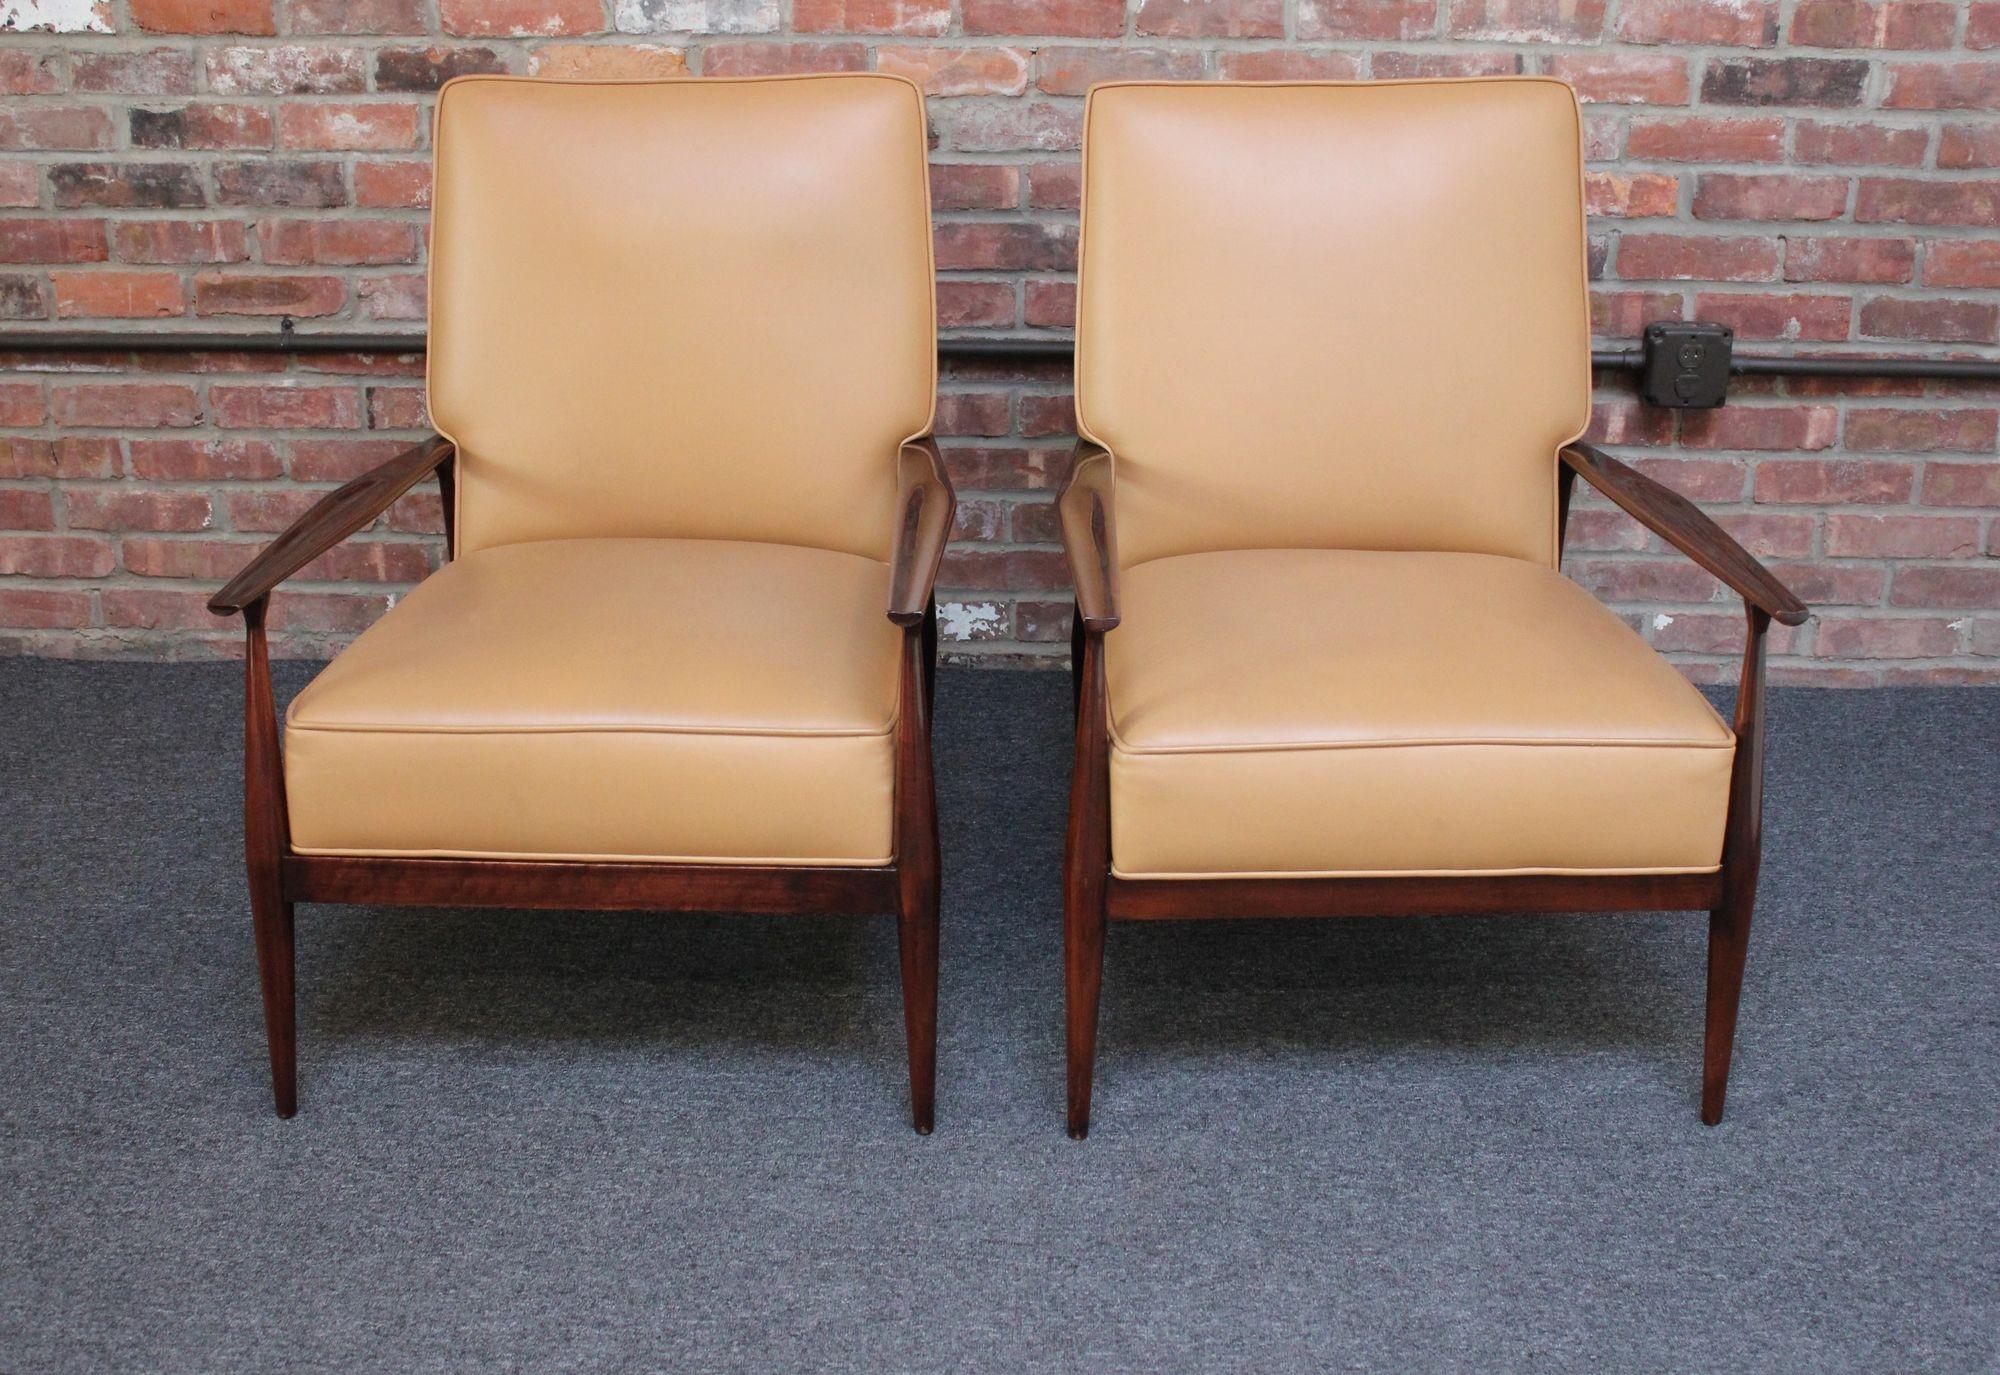 Begehrtes Paar Sessel der Paul Mccobb Planner Group, hergestellt zwischen 1955 und 1956 (Winchendon, MA, USA).
Der skulpturale Sitz-/Rückenrahmen betont die schlanken, geschnitzten Armlehnen.
Scharfer, schöner Satz mit klaren Linien, der sich aus